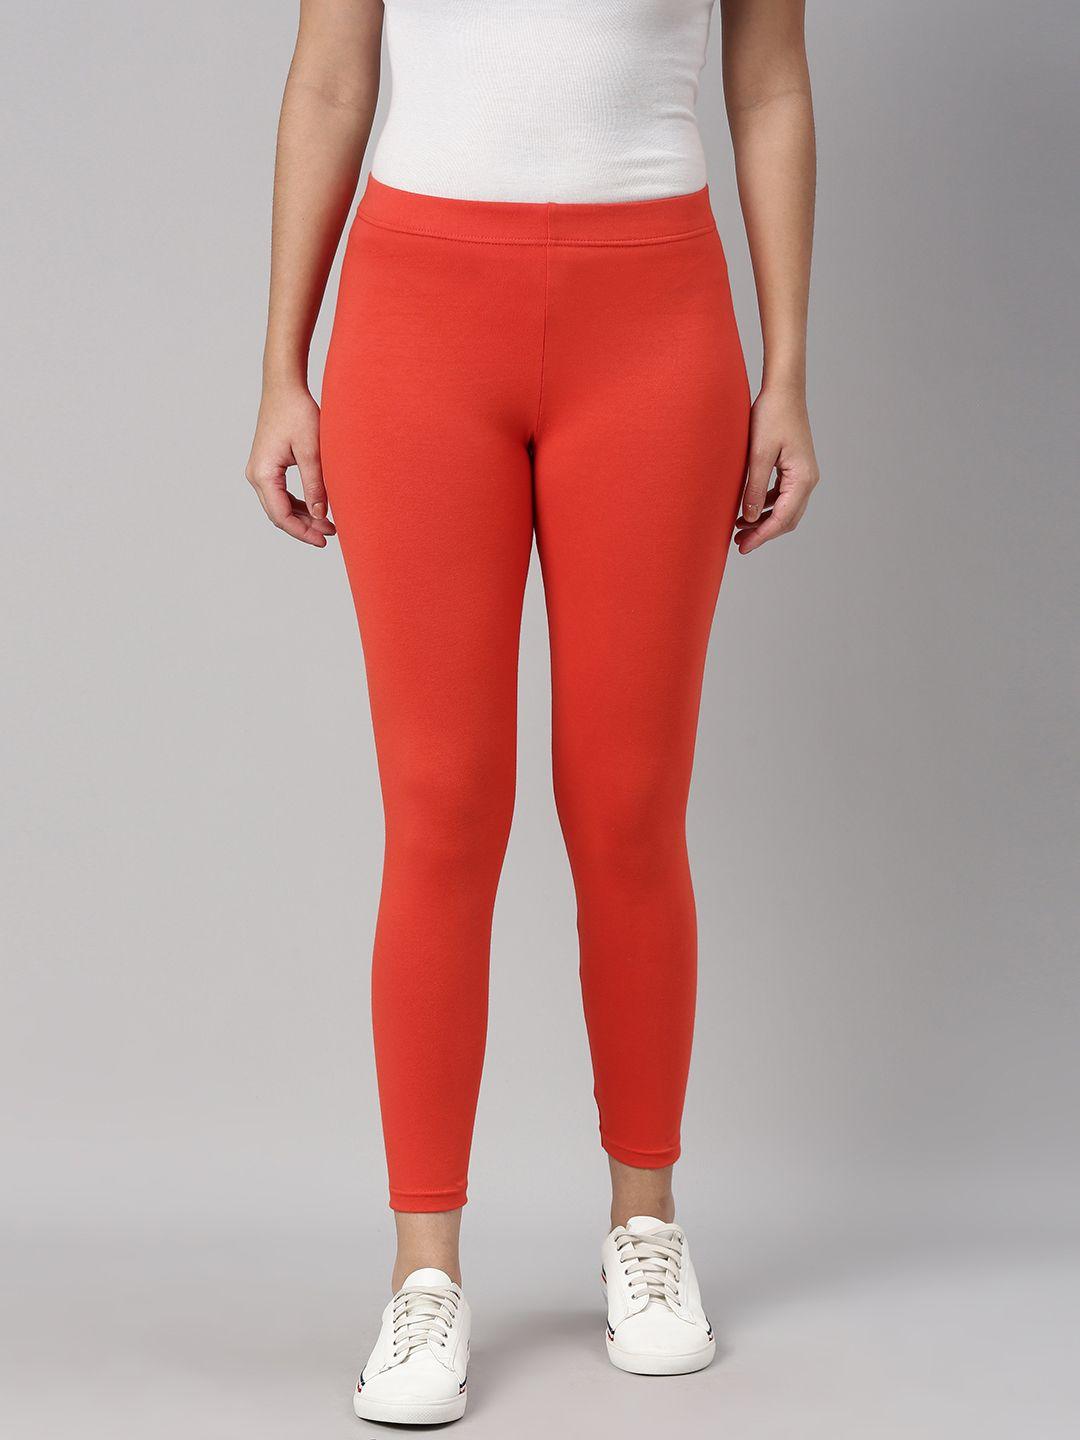 abof women orange solid leggings